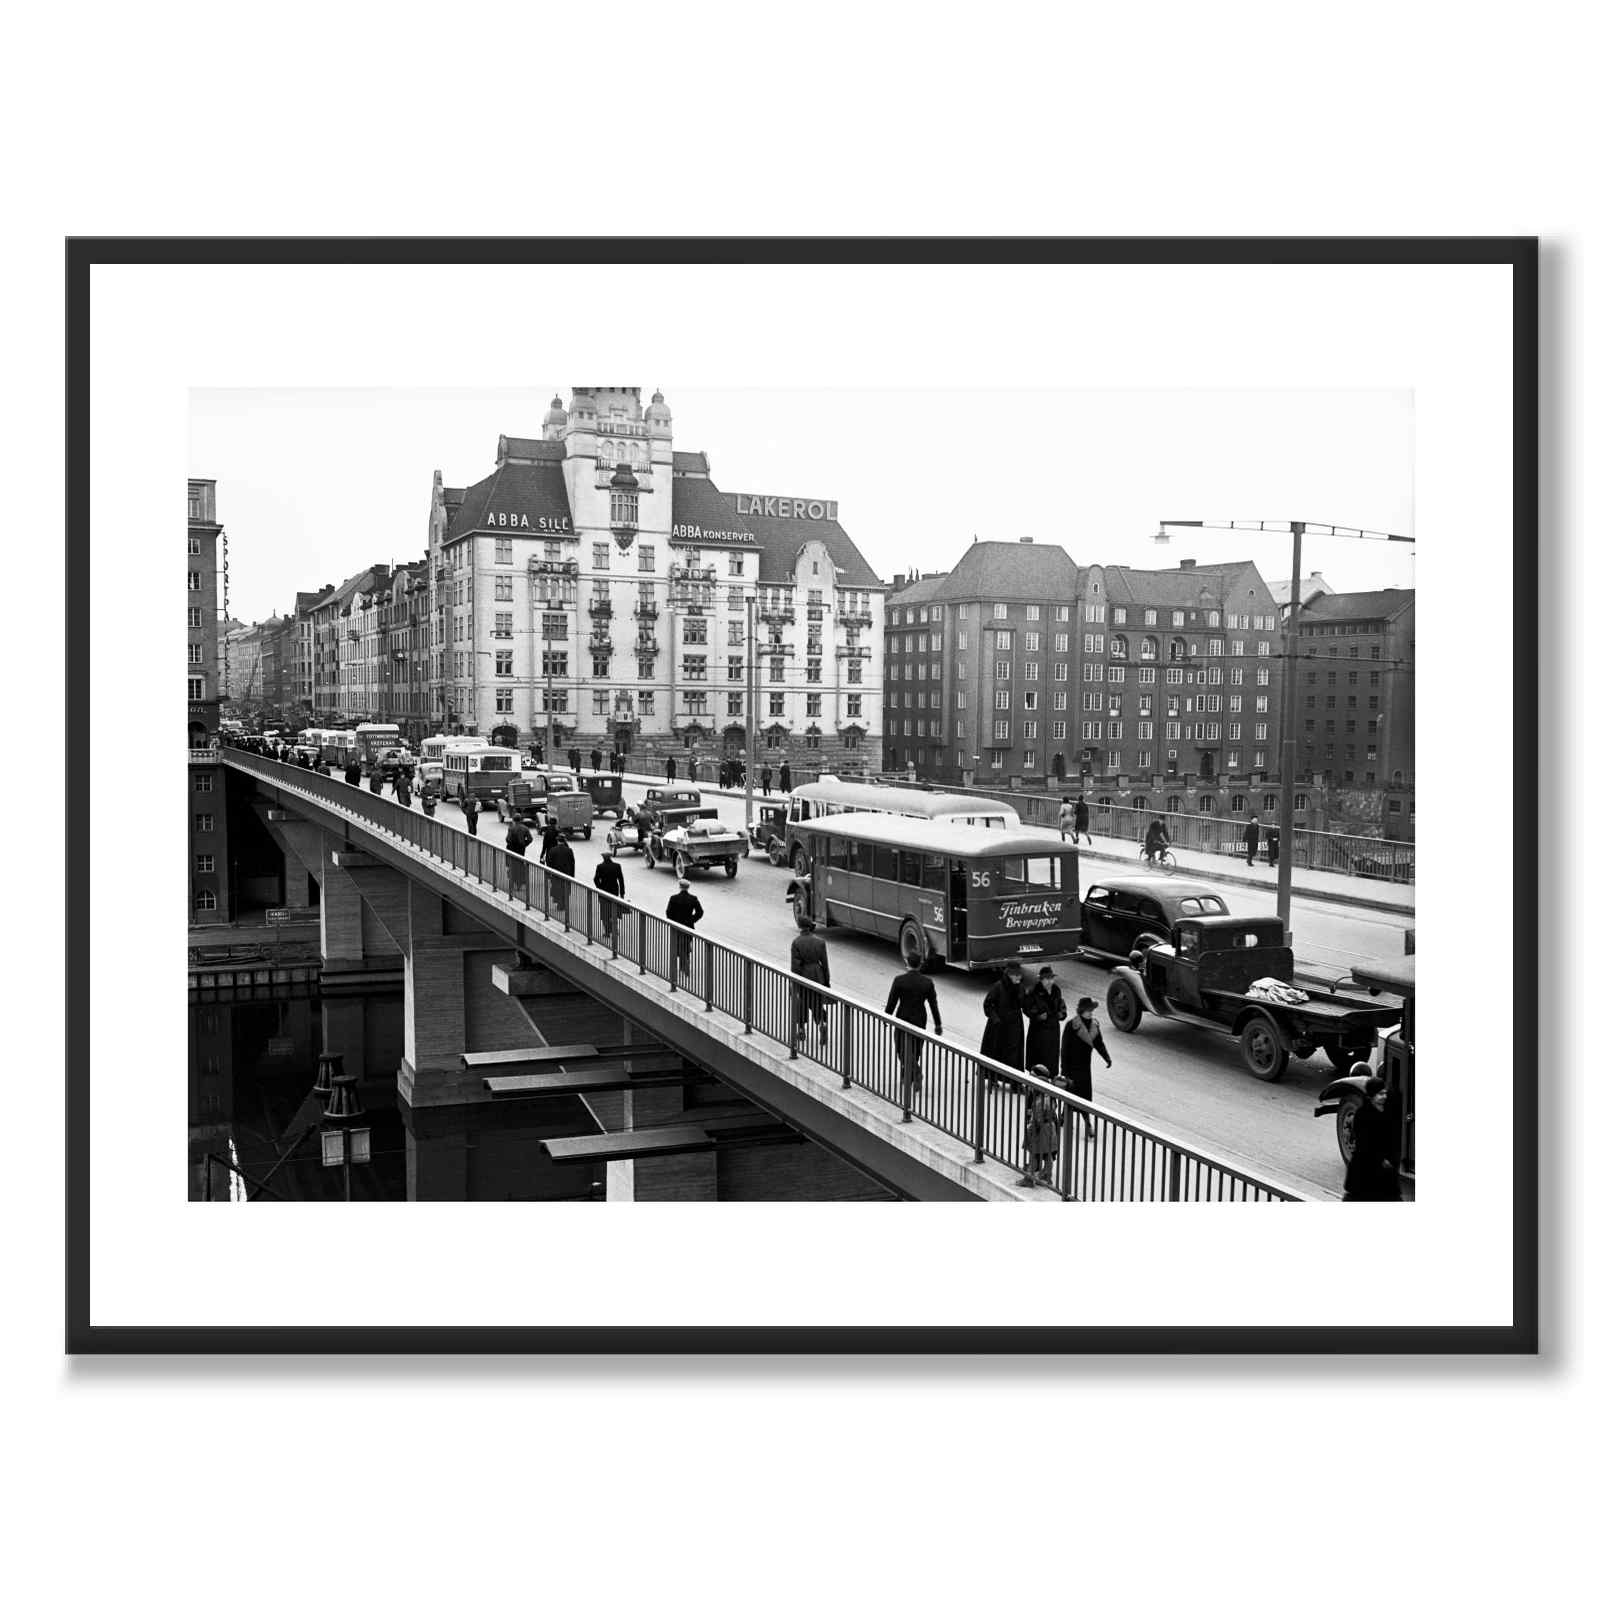 St. Eriks bro i 1940